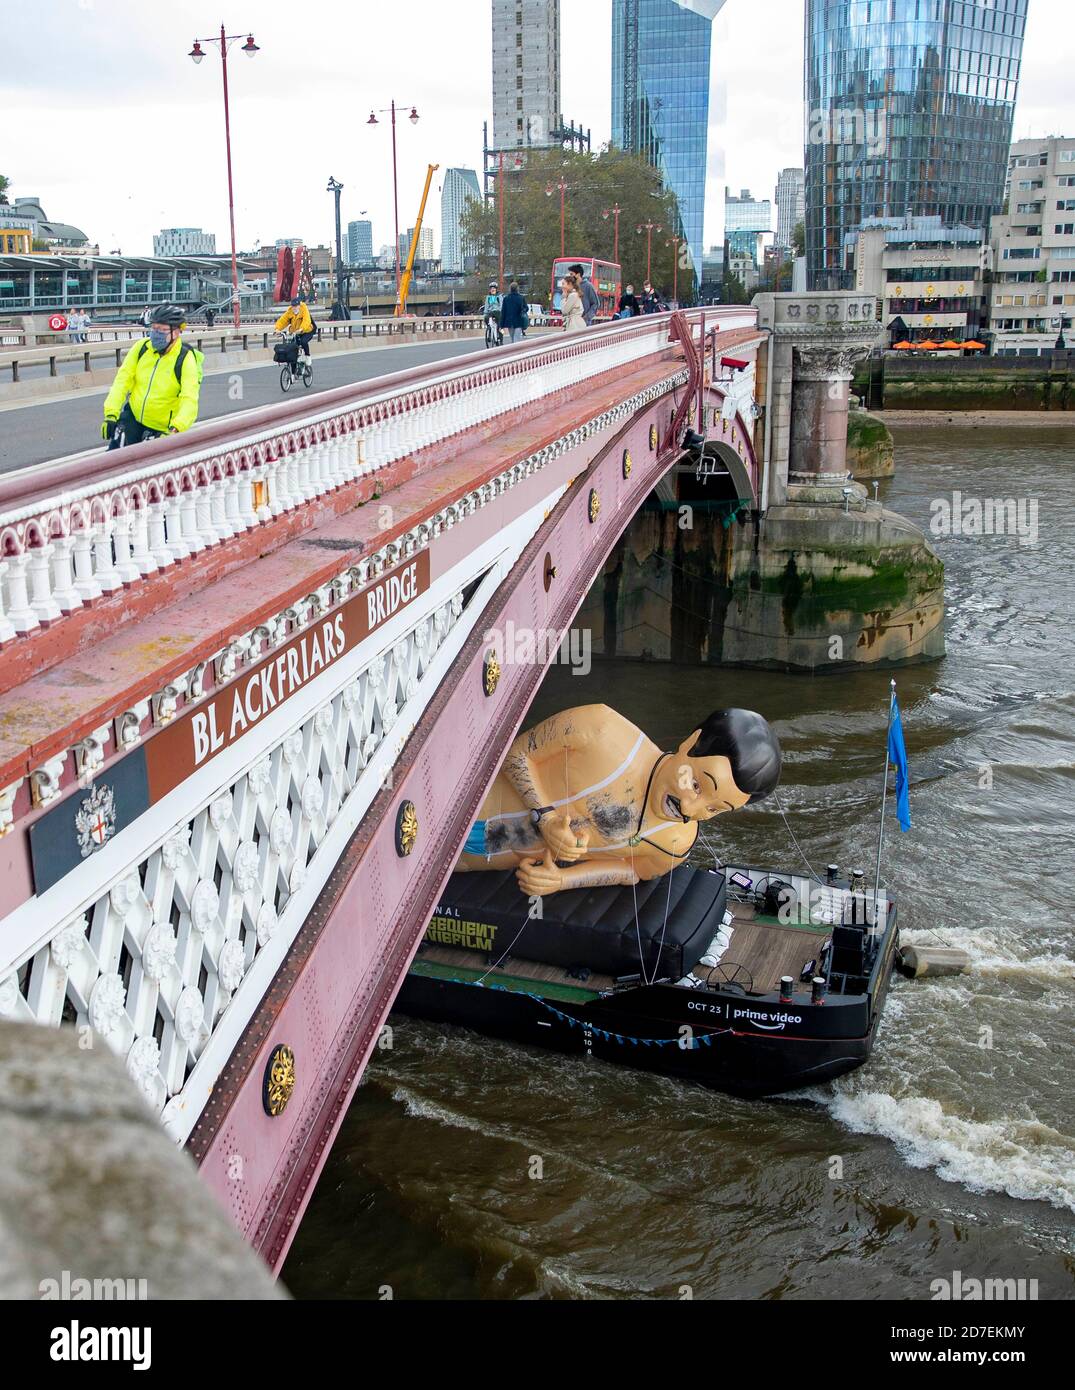 Bild zeigt: Borat Schlauchboot geht die Themse in London hinunter, um Borat  zu fördern 2 maskierte Radfahrer überqueren Blackfriars, wie das  Schlauchboot unter geht Stockfotografie - Alamy